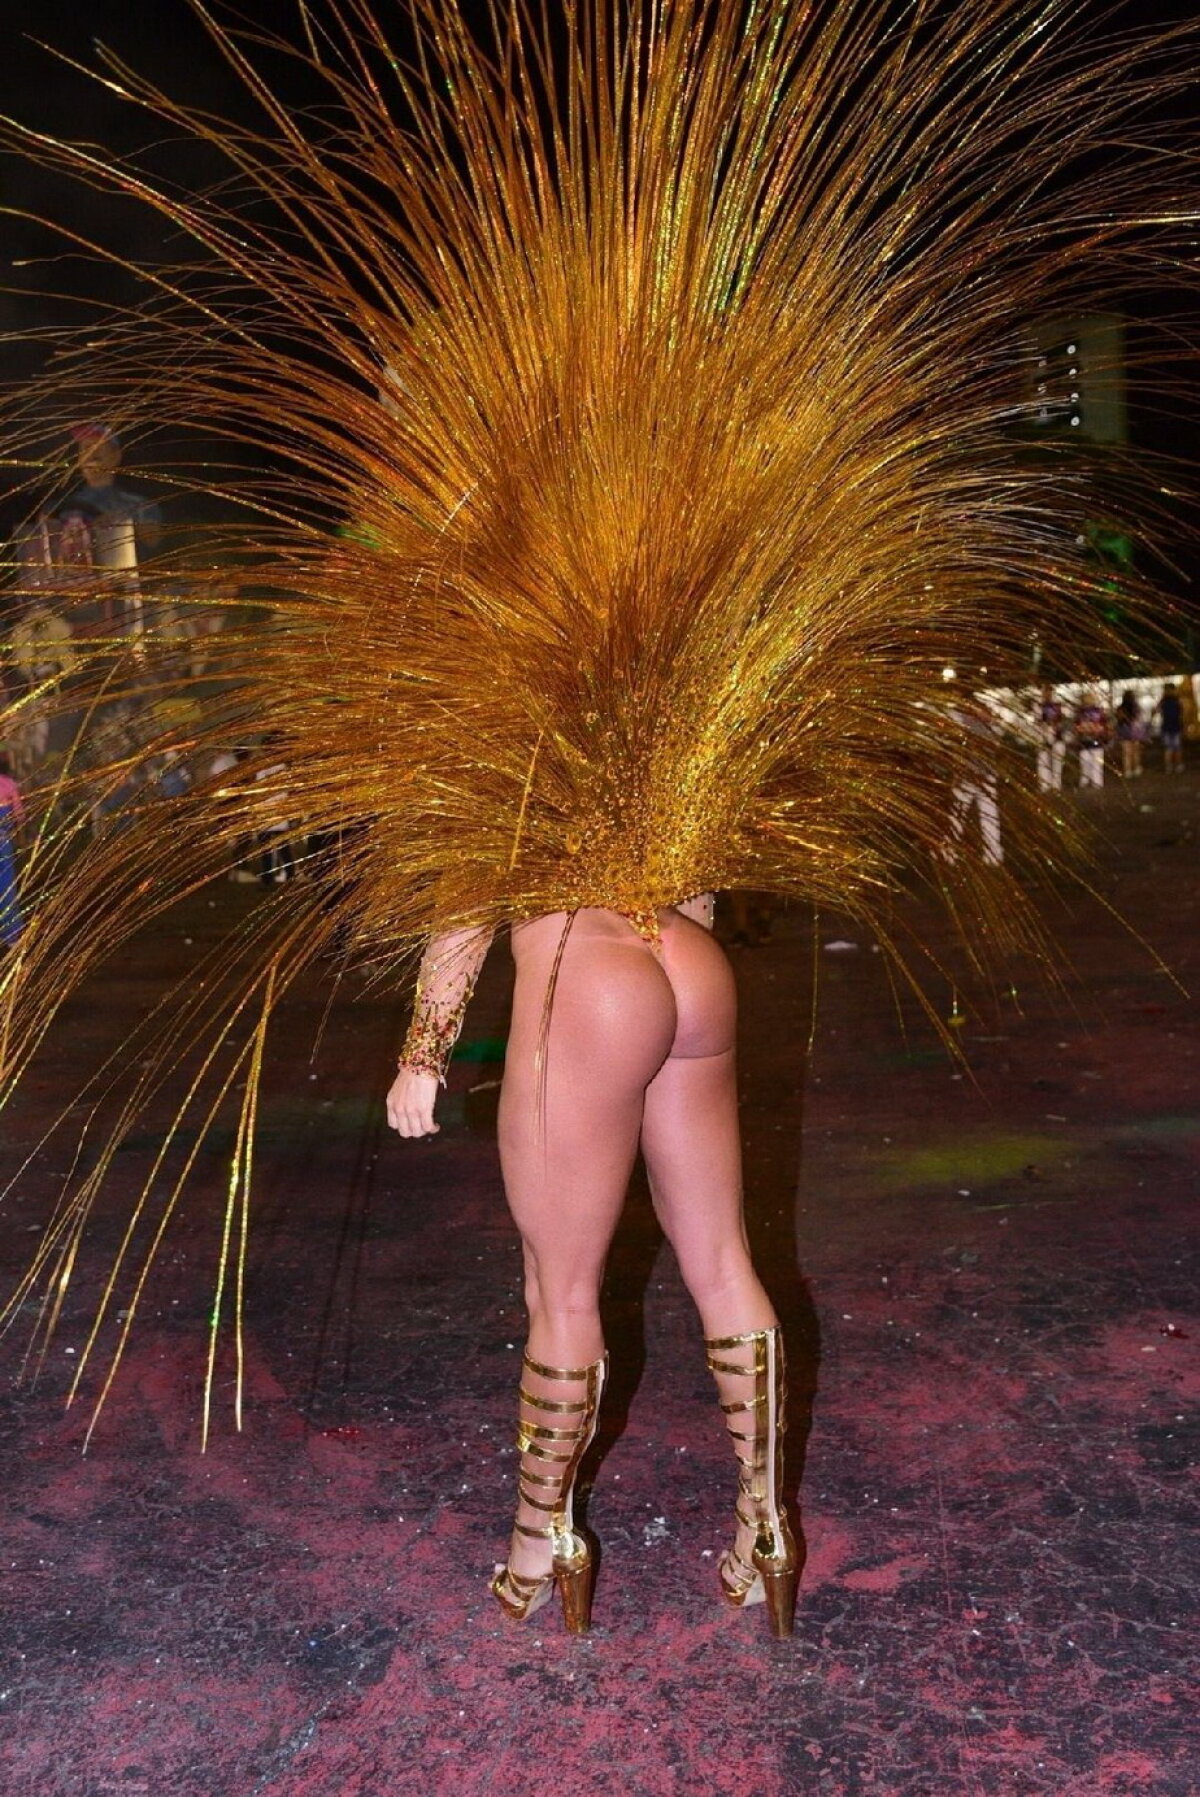 GALERIE FOTO Carnavalul de la Rio, în imagini greu de uitat. Femeile sunt superbe!